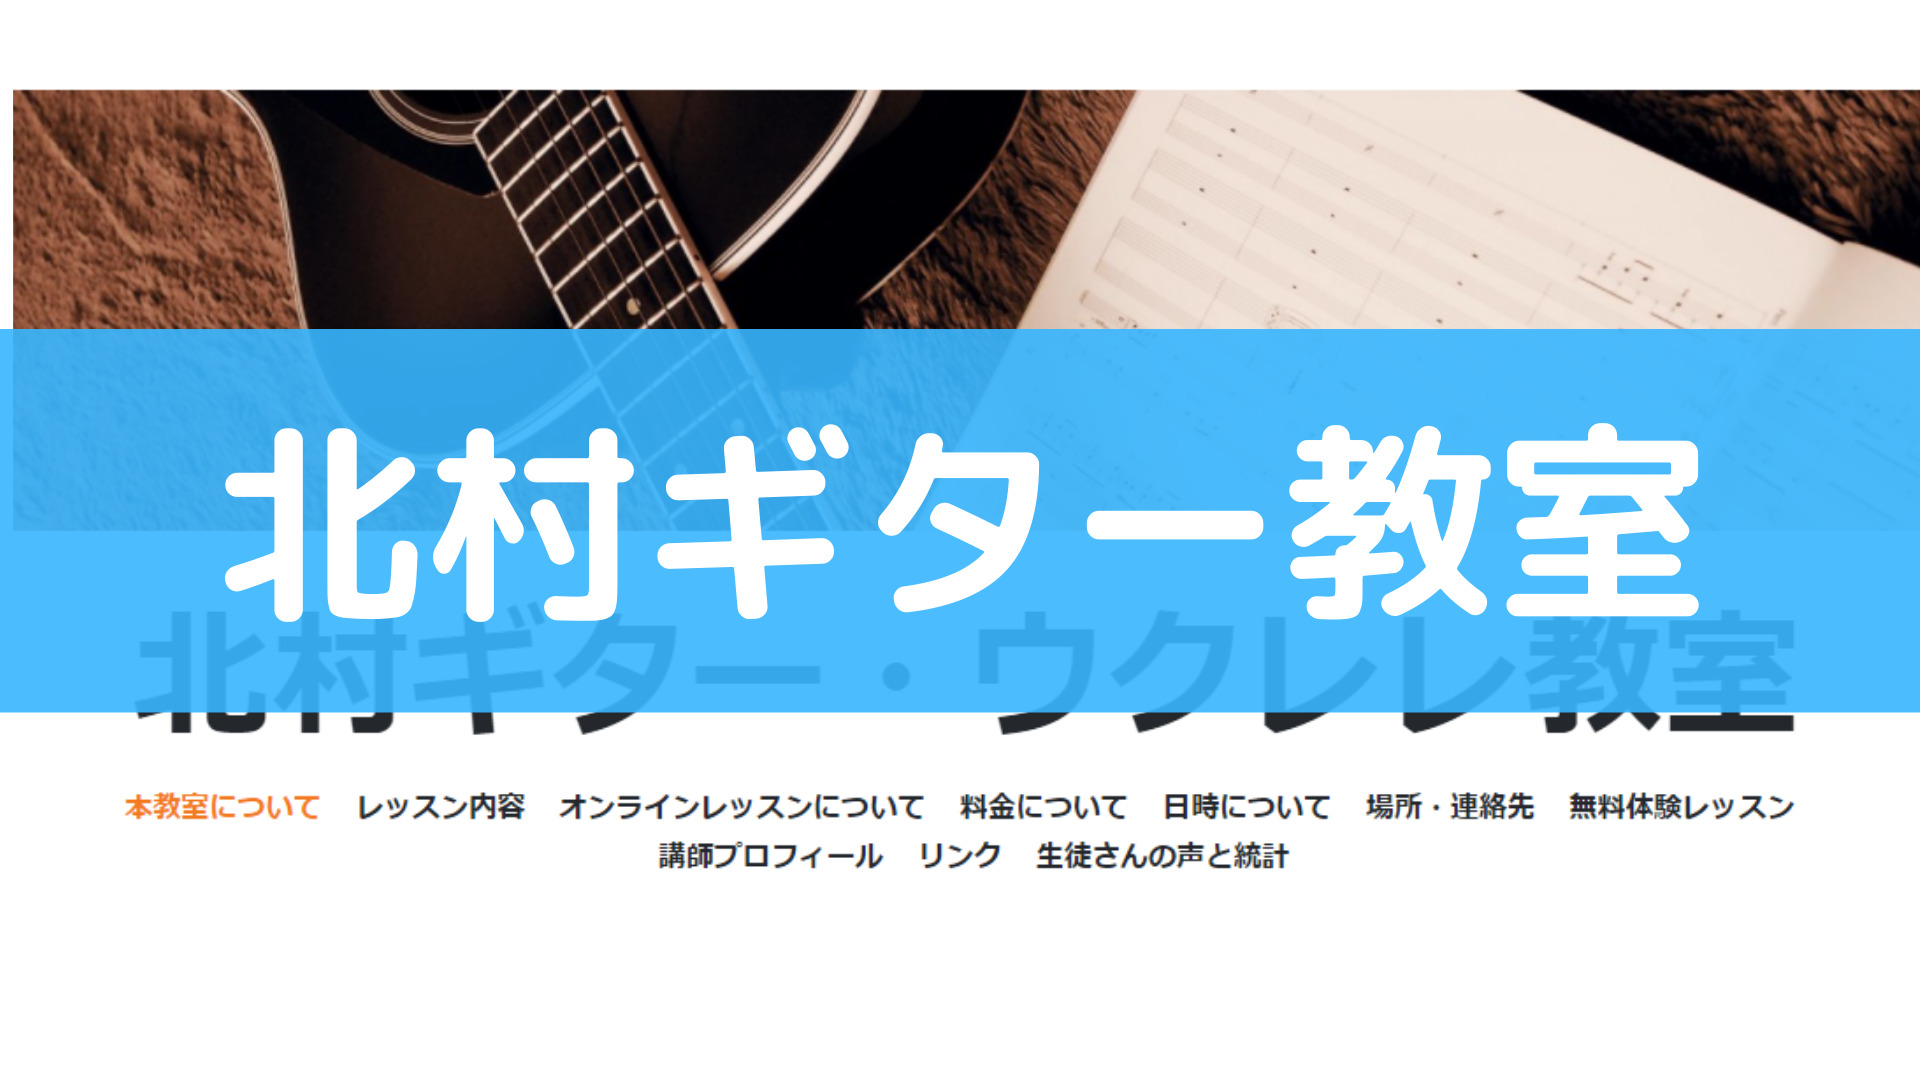 ギターレッスン後の自宅練習サポートが手厚い奈良のギター教室【北村ギター教室】